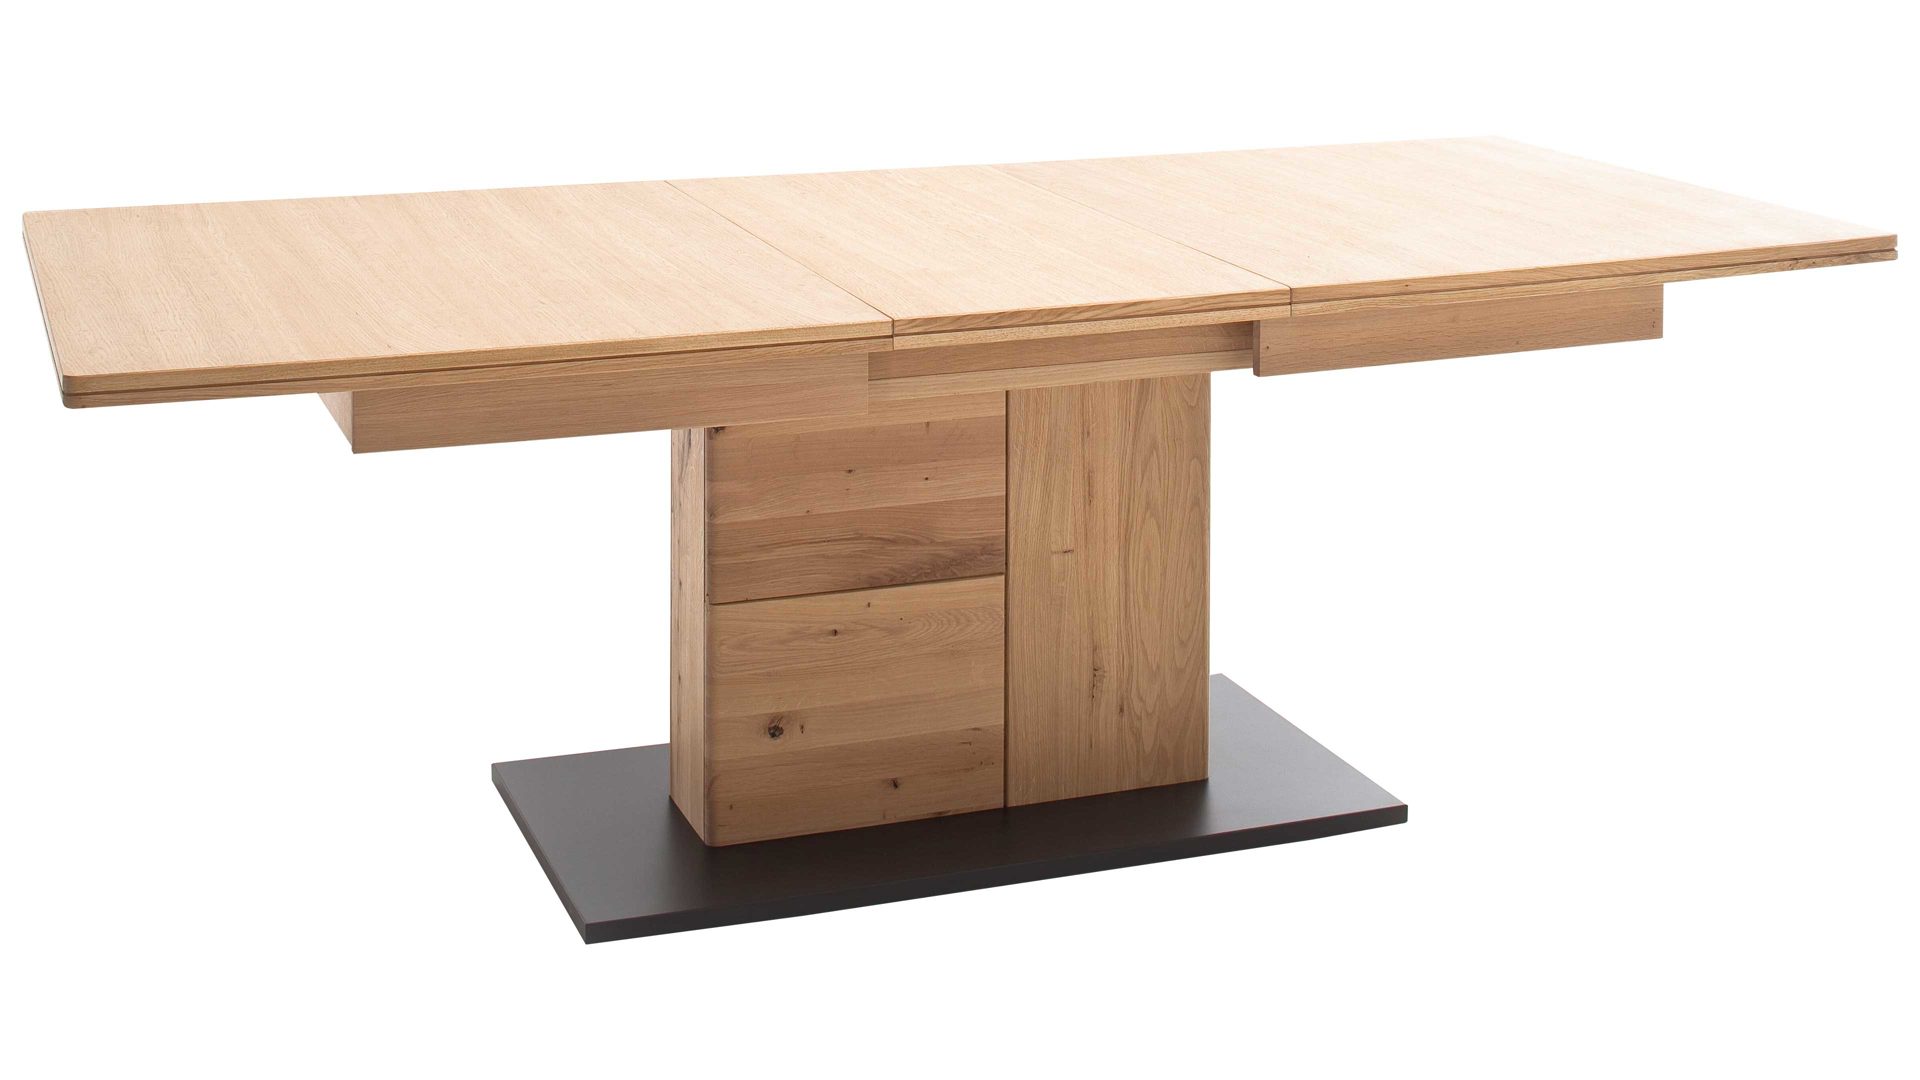 Auszugtisch Mca furniture aus Holz in Holzfarben Wohnprogramm Barcelona - Ausziehtisch geölte Balkeneiche – ca. 180 - 230 x 100 cm